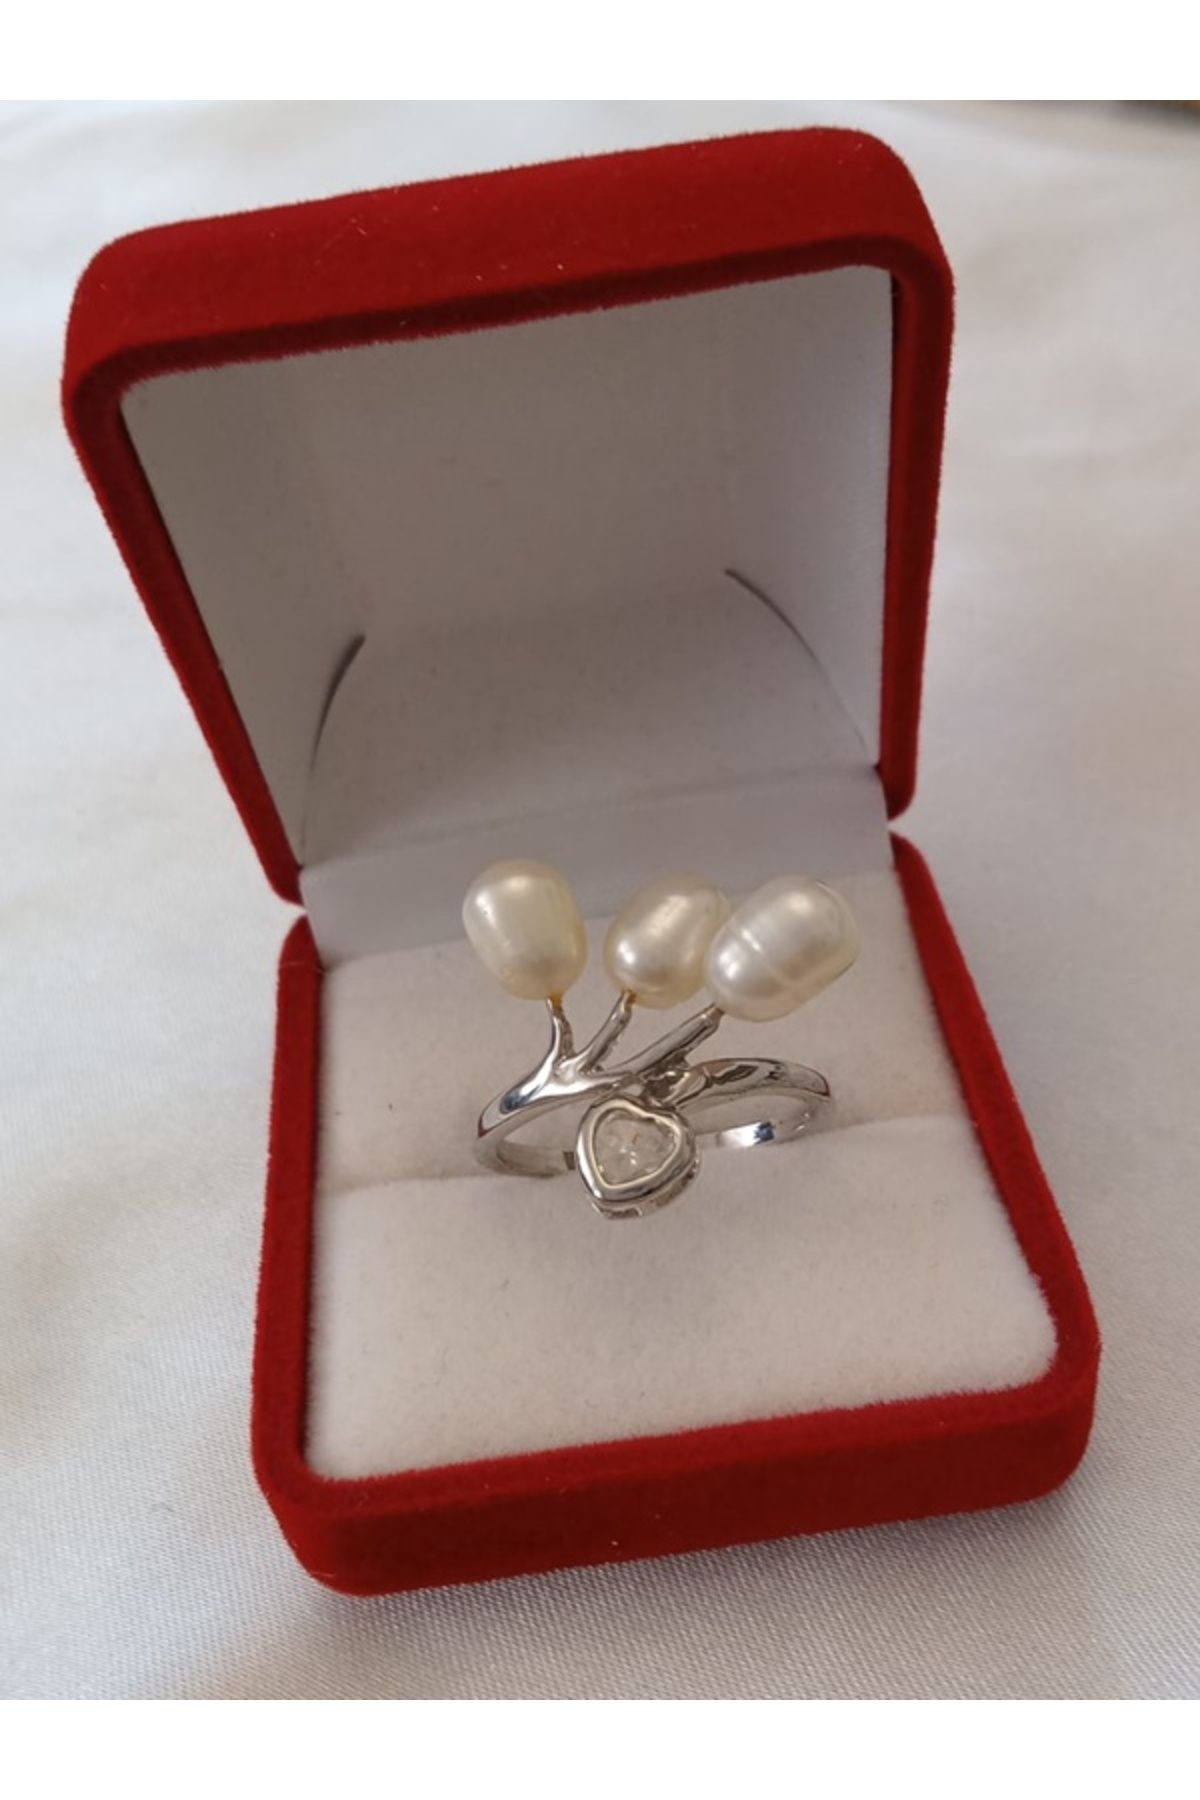 Shisa Jewel Beyaz Gerçek Inci Yüzük Kalp Şeklinde Pırlantalarla Süslenmiş Yüzüğün Gövdesi Rodyum(08)